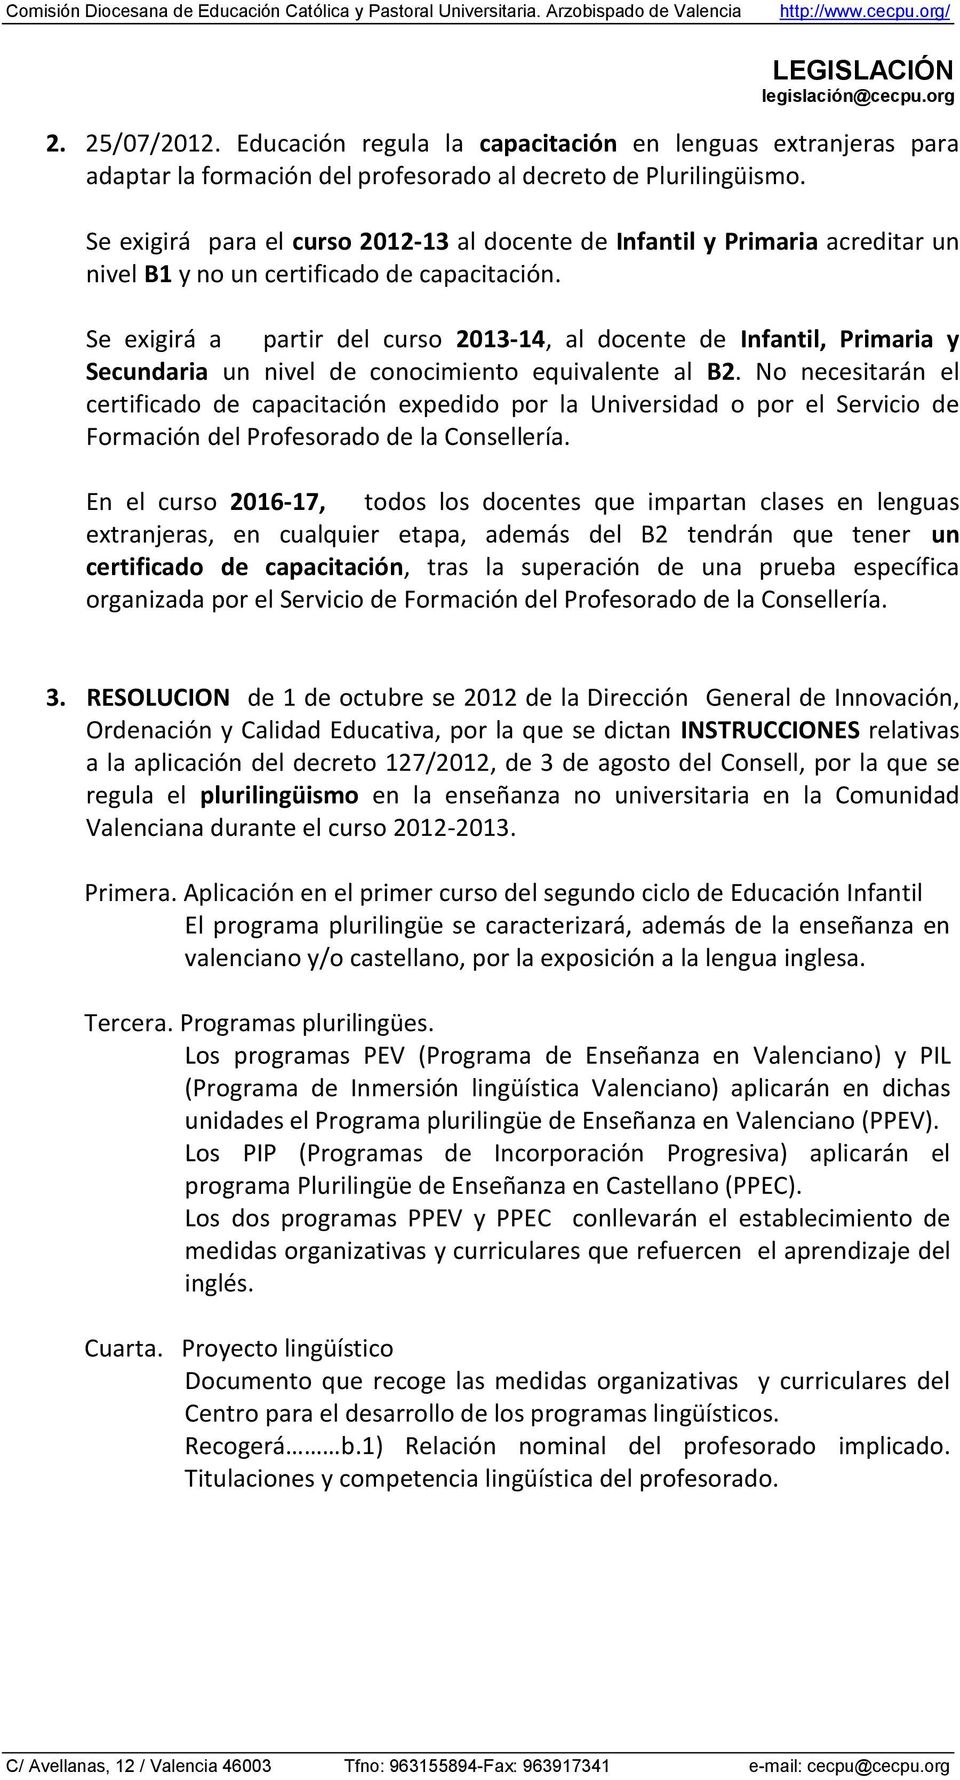 Se exigirá a partir del curso 2013-14, al docente de Infantil, Primaria y Secundaria un nivel de conocimiento equivalente al B2.